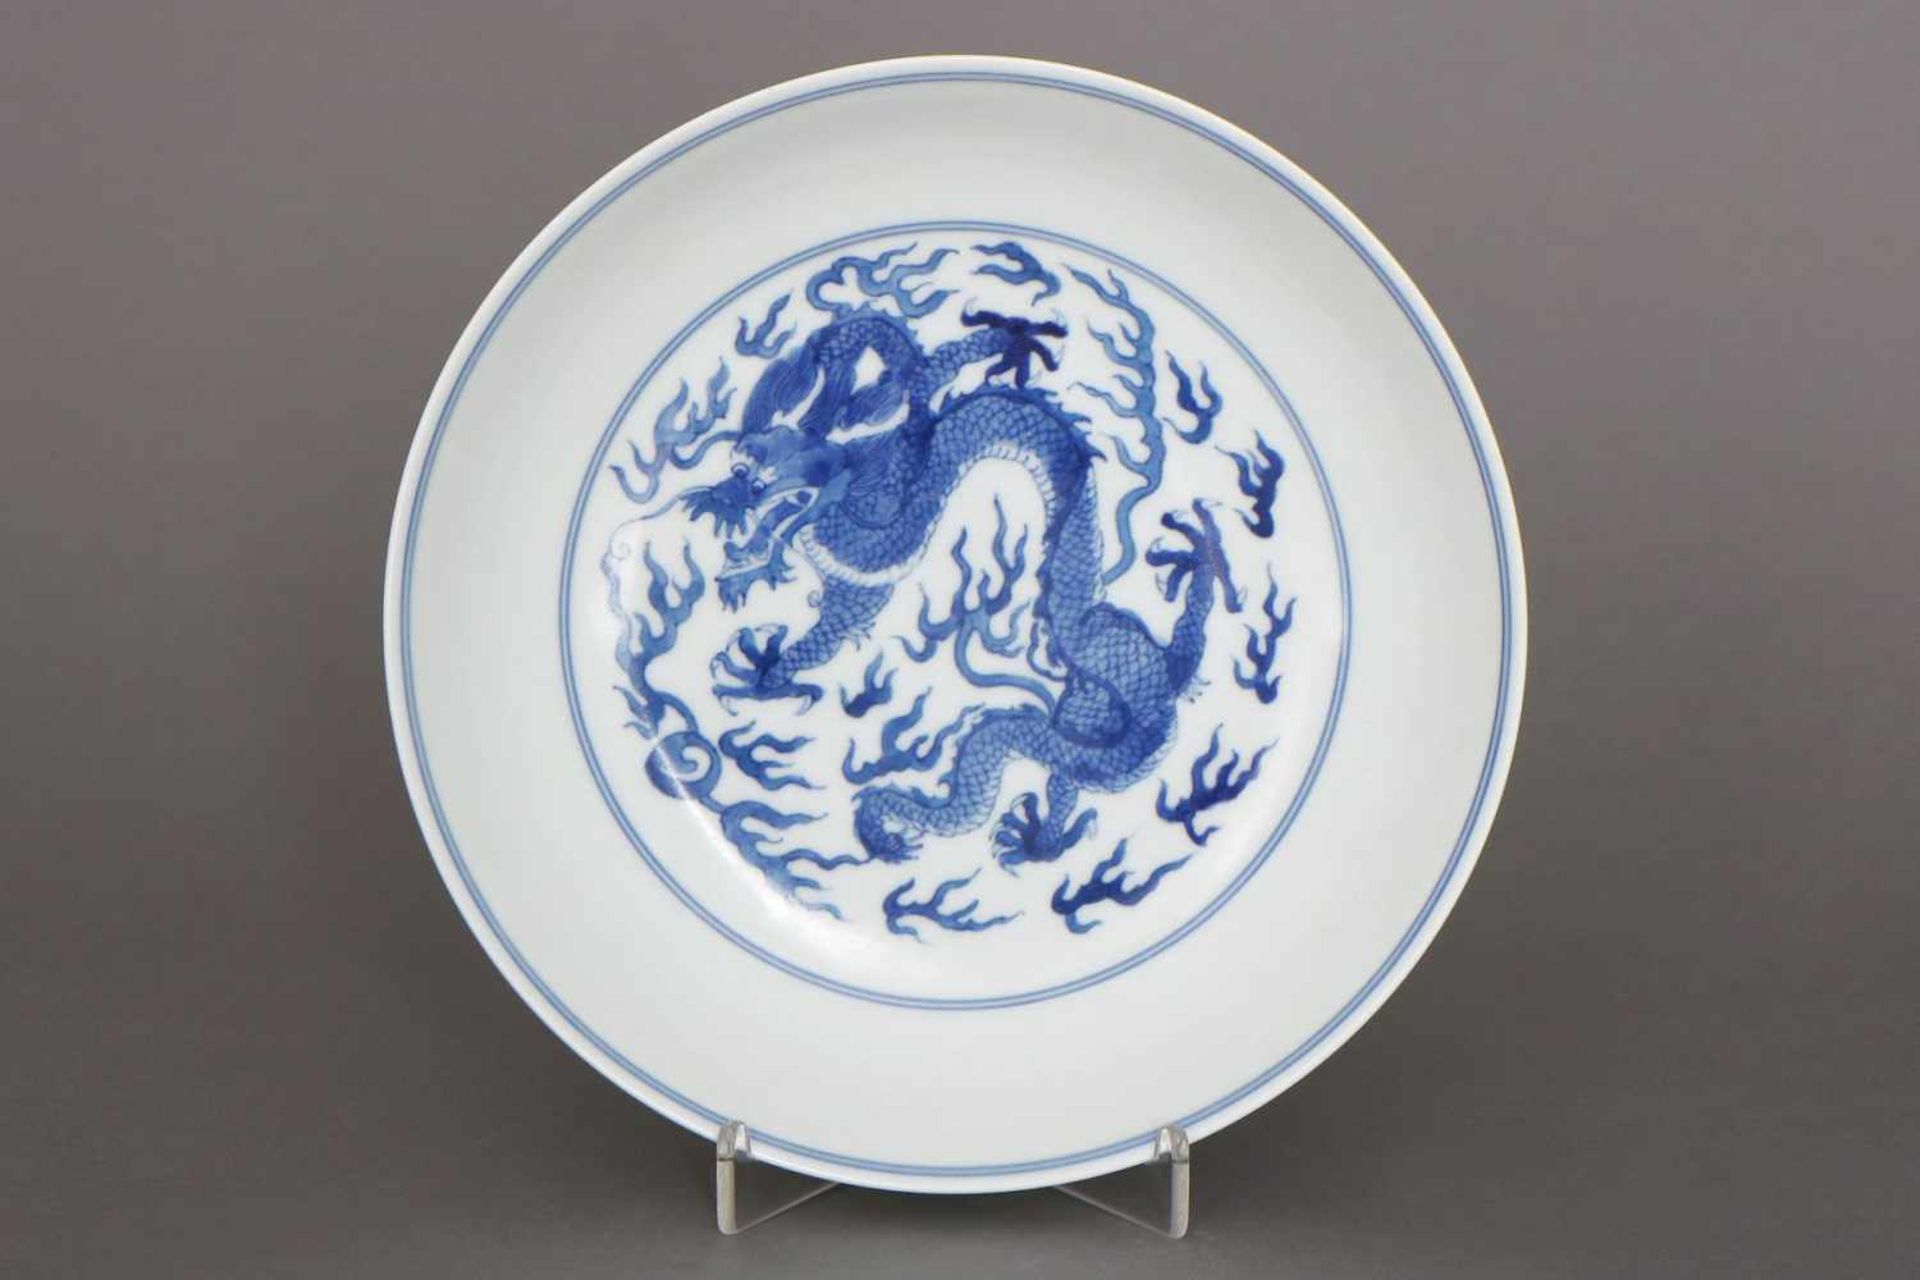 Chinesischer Porzellantellerrunde, vertiefte Form, im Spiegel sowie auf Fahne umlaufend blaues